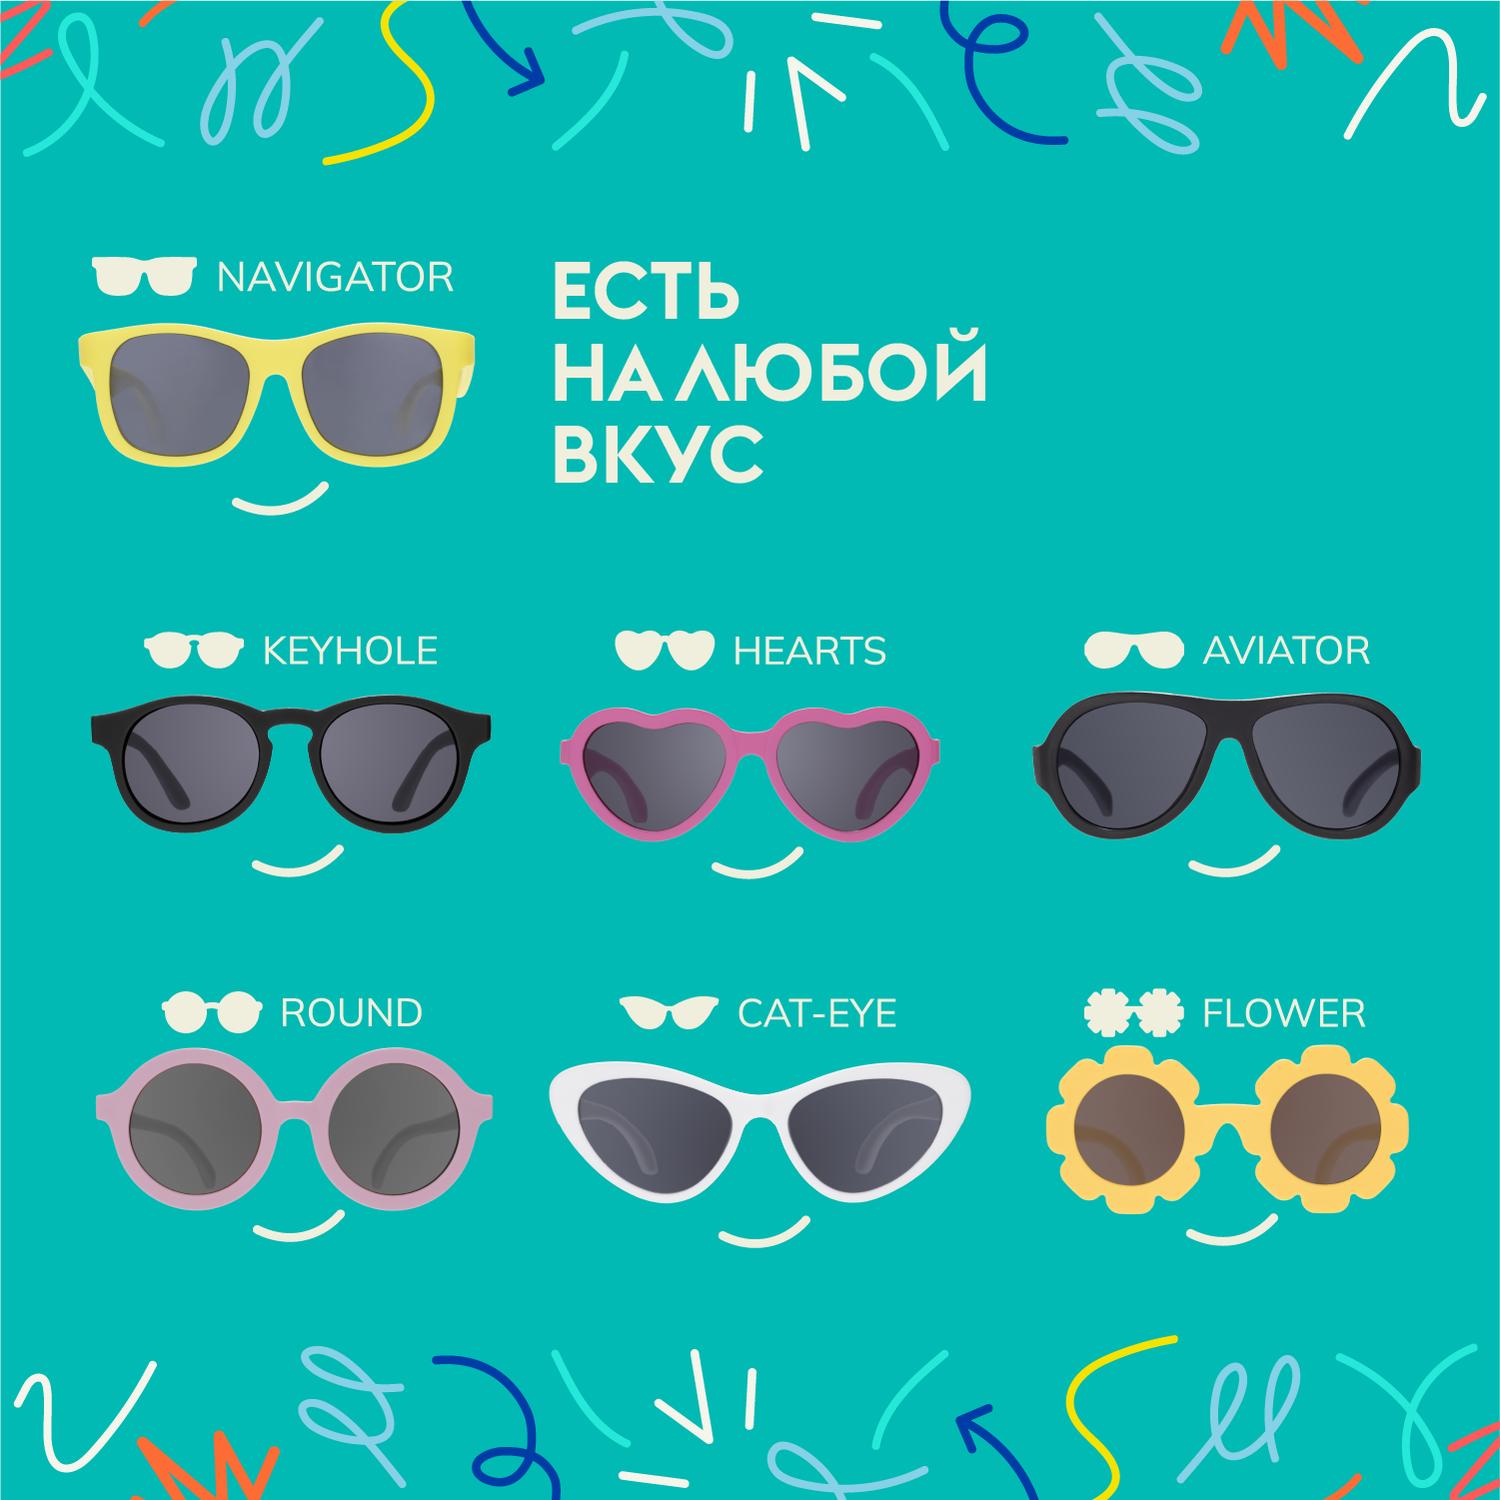 Детские солнцезащитные очки Babiators Navigator Шаловливый белый 6+ лет NAV-034 - фото 6